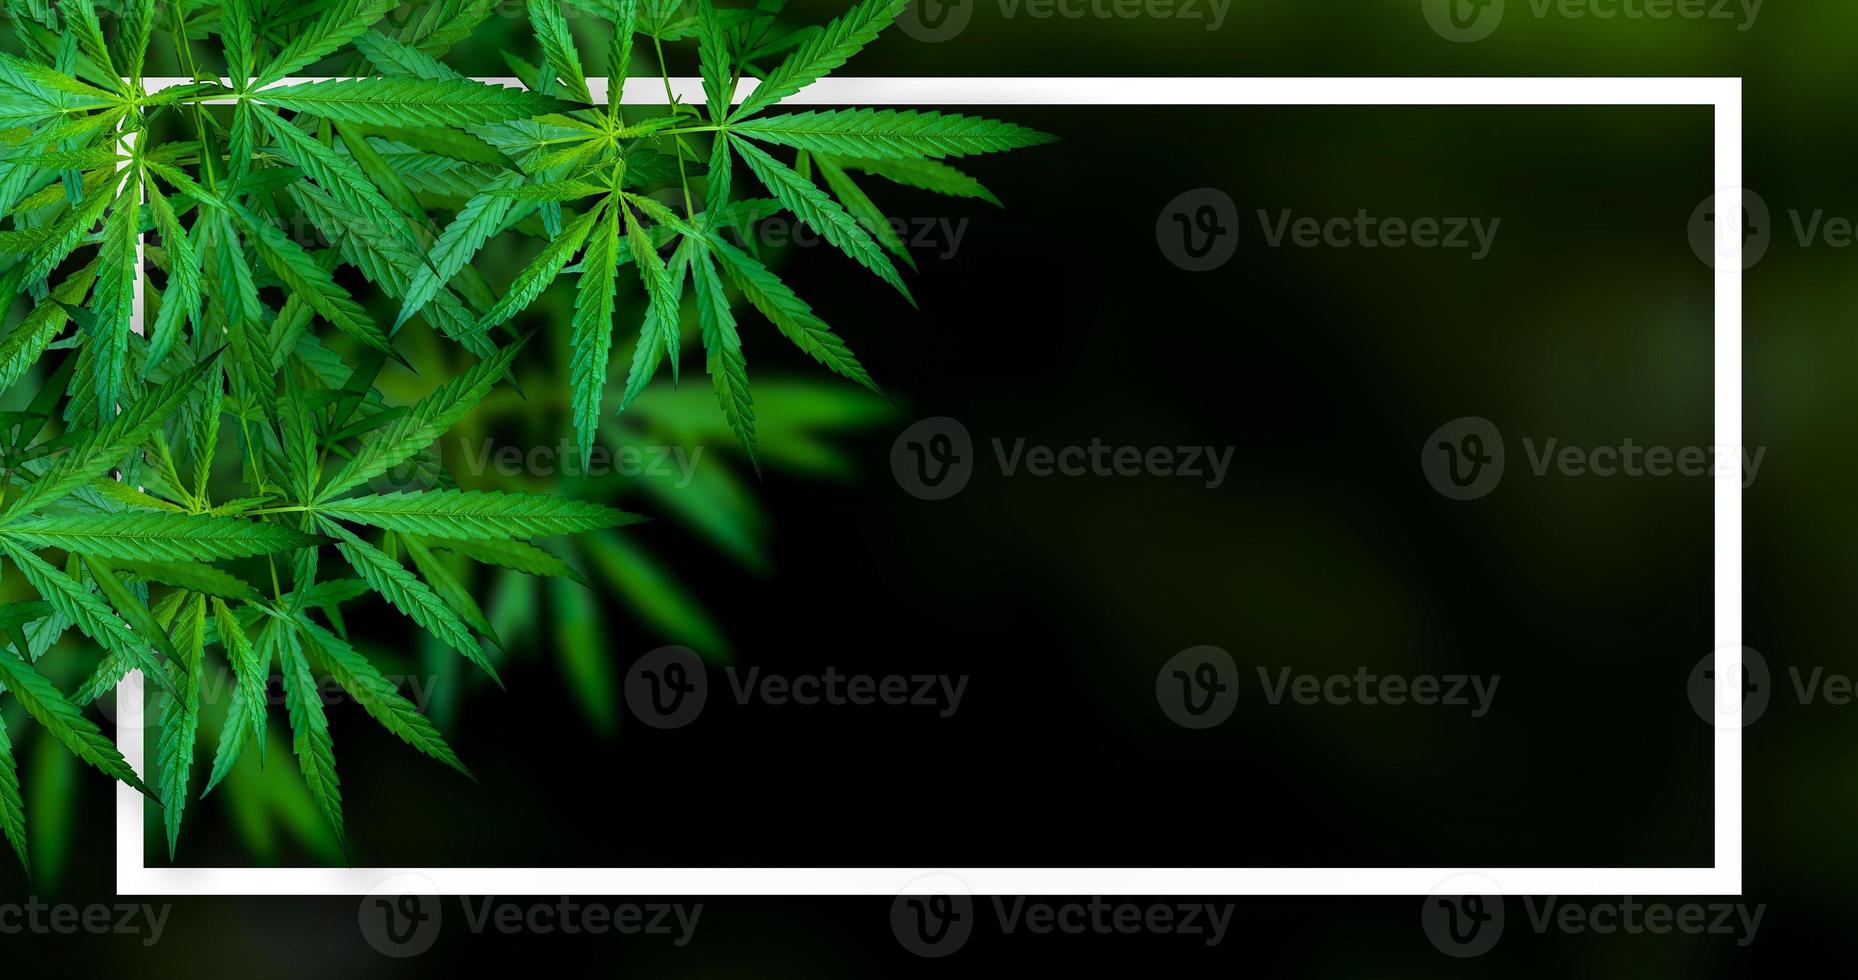 Marijuana leaf illustrations on cannabis Dark background photo